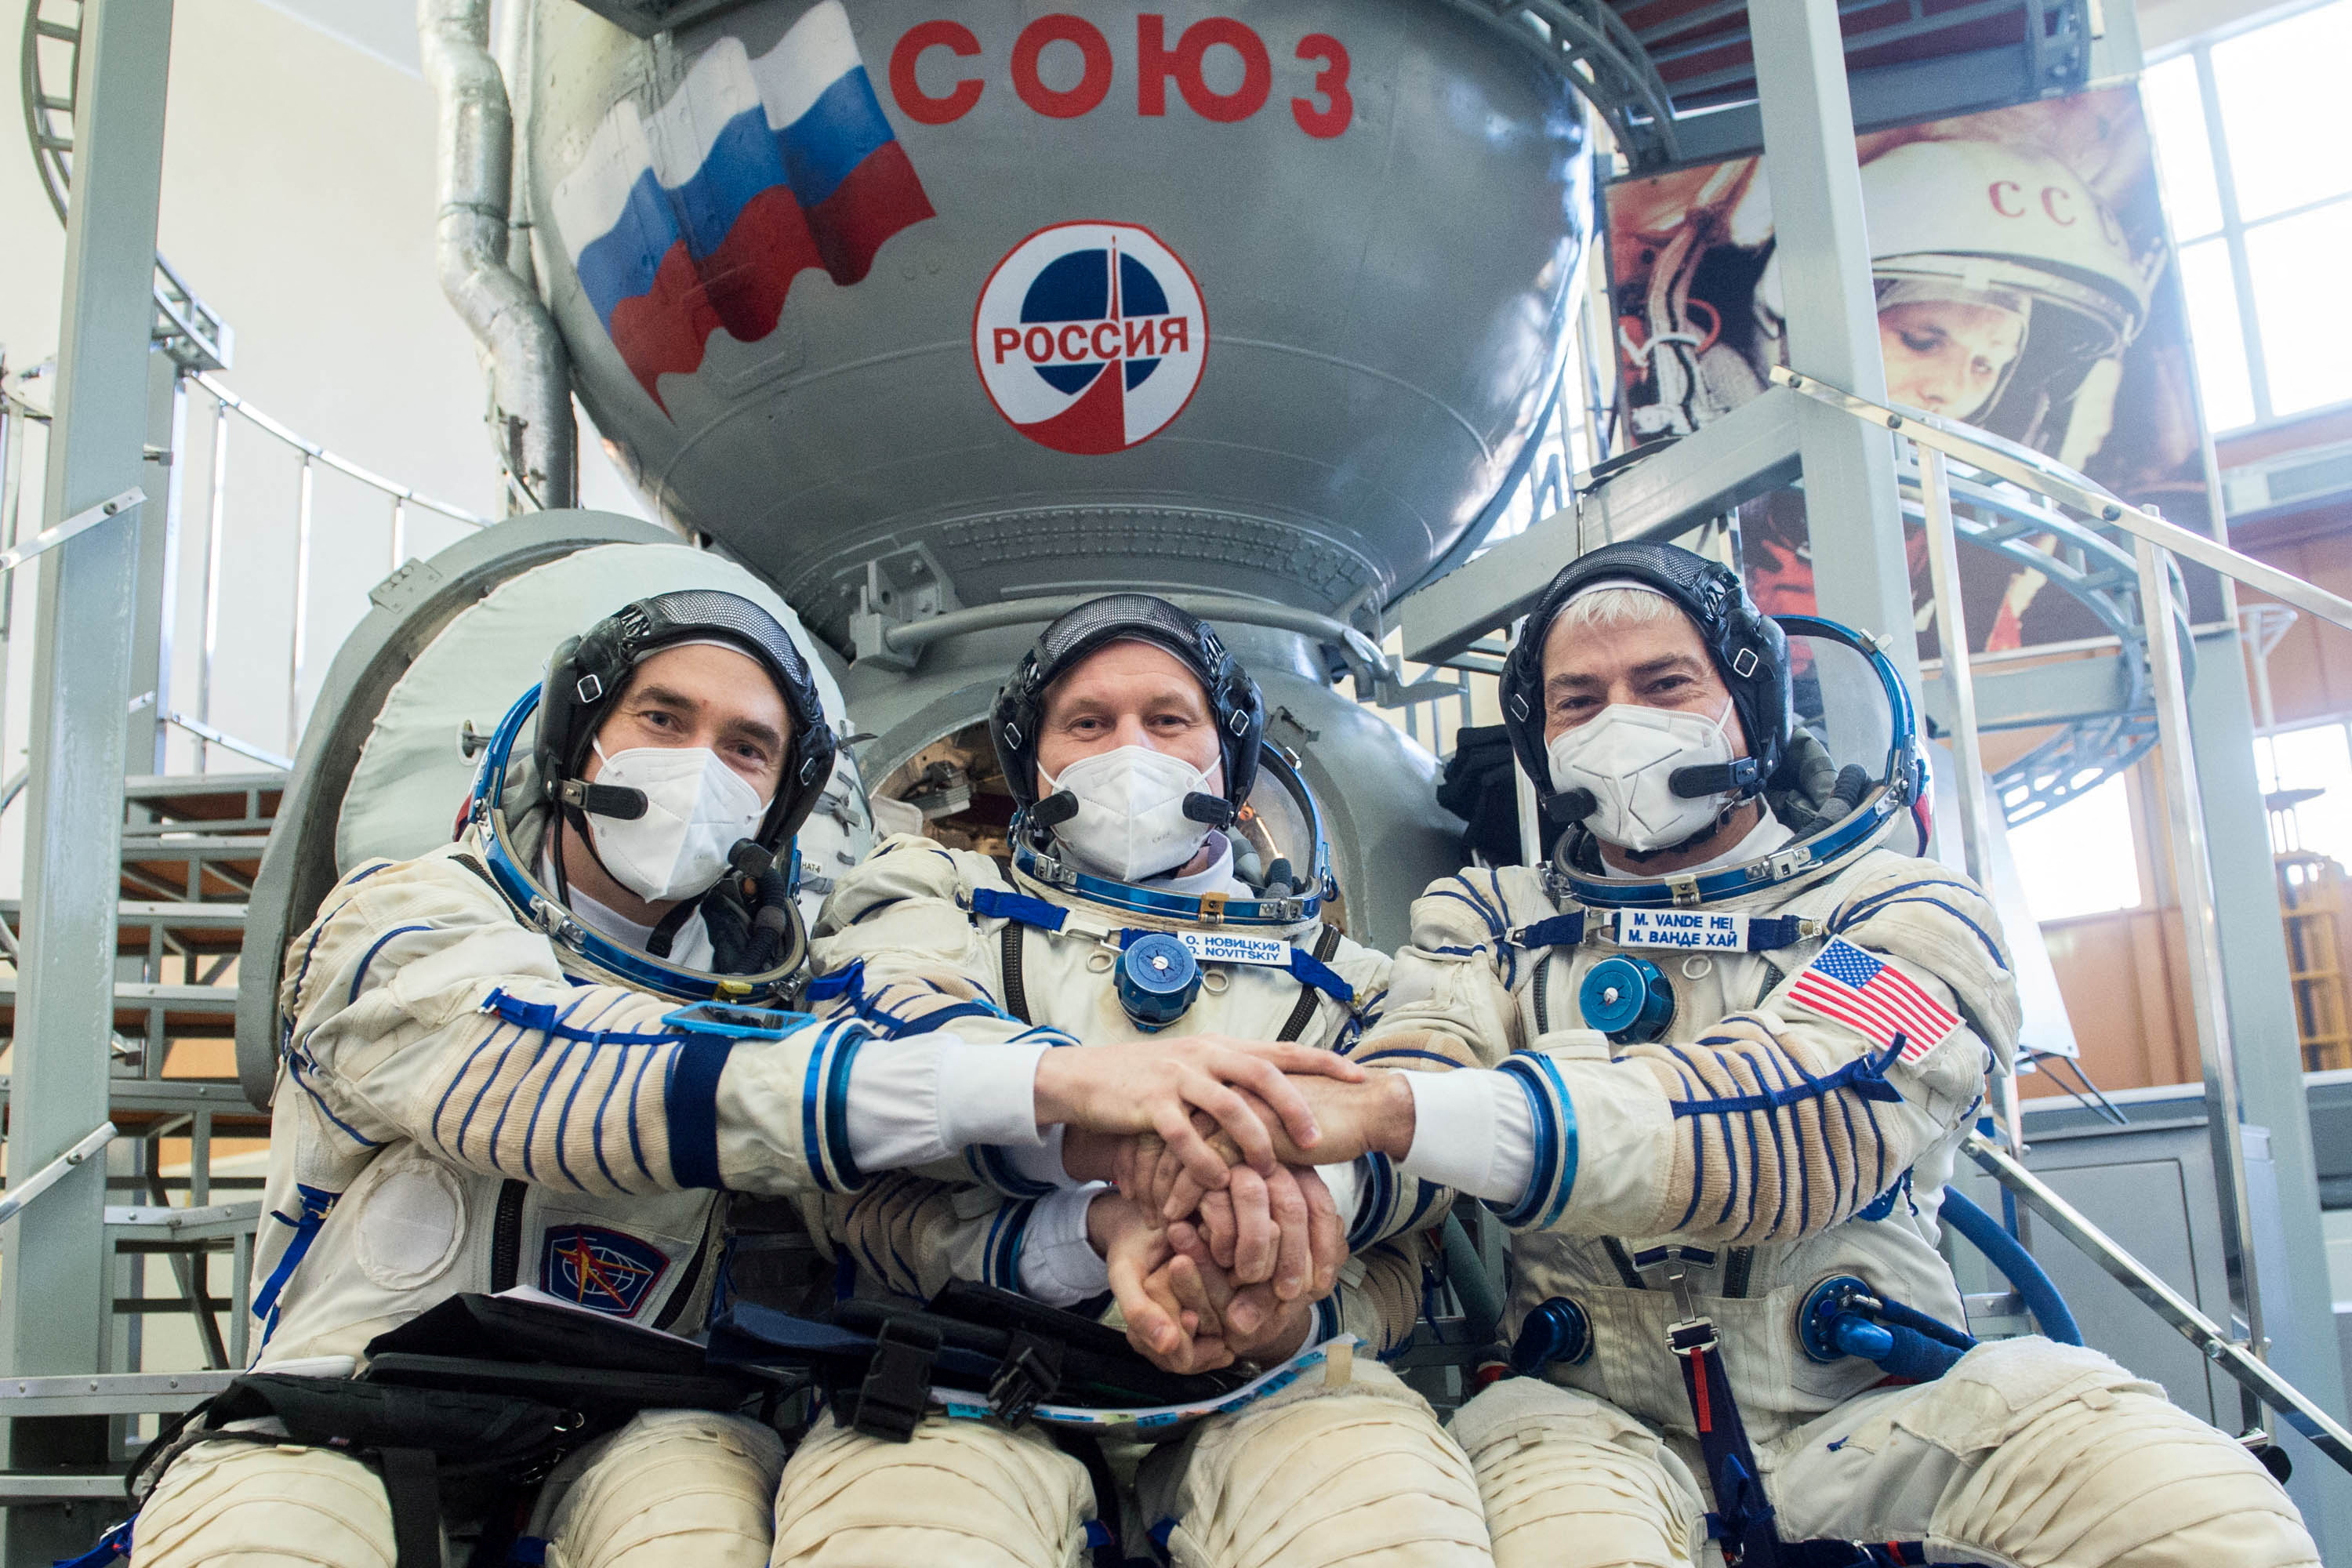 Actualmente hay 3 cosmonautas rusos viviendo en el espacio (Andrey Shelepin/GCTC/Russian space agency Roscosmos/Handout via REUTERS)